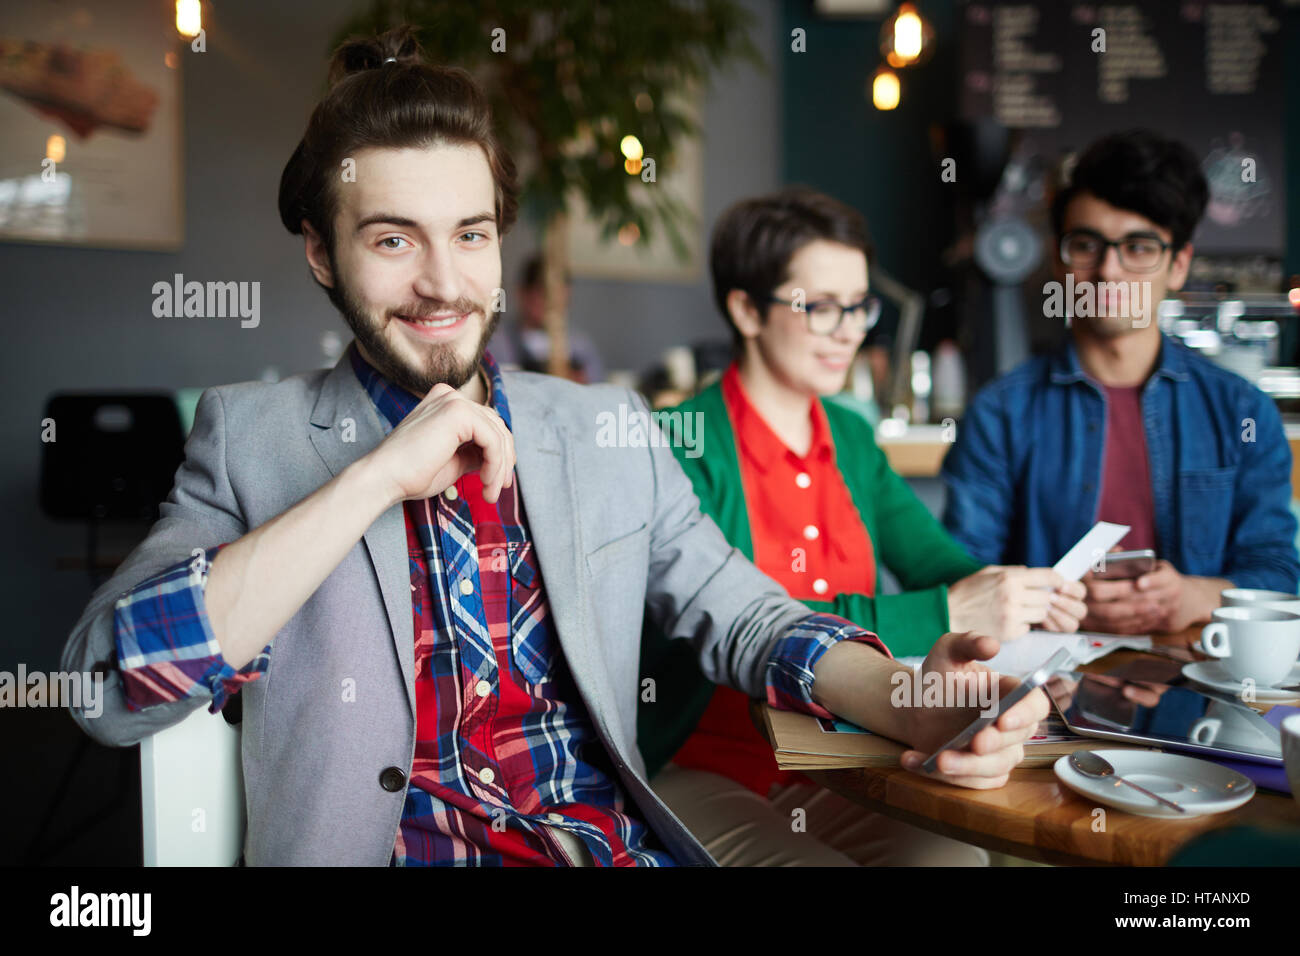 Portrait de trois personnes créatives habillés en tenue d'affaires décontractée à table dans un café, se concentrer sur les jeunes smiling businessman with long hair smiling gaiement lo Banque D'Images